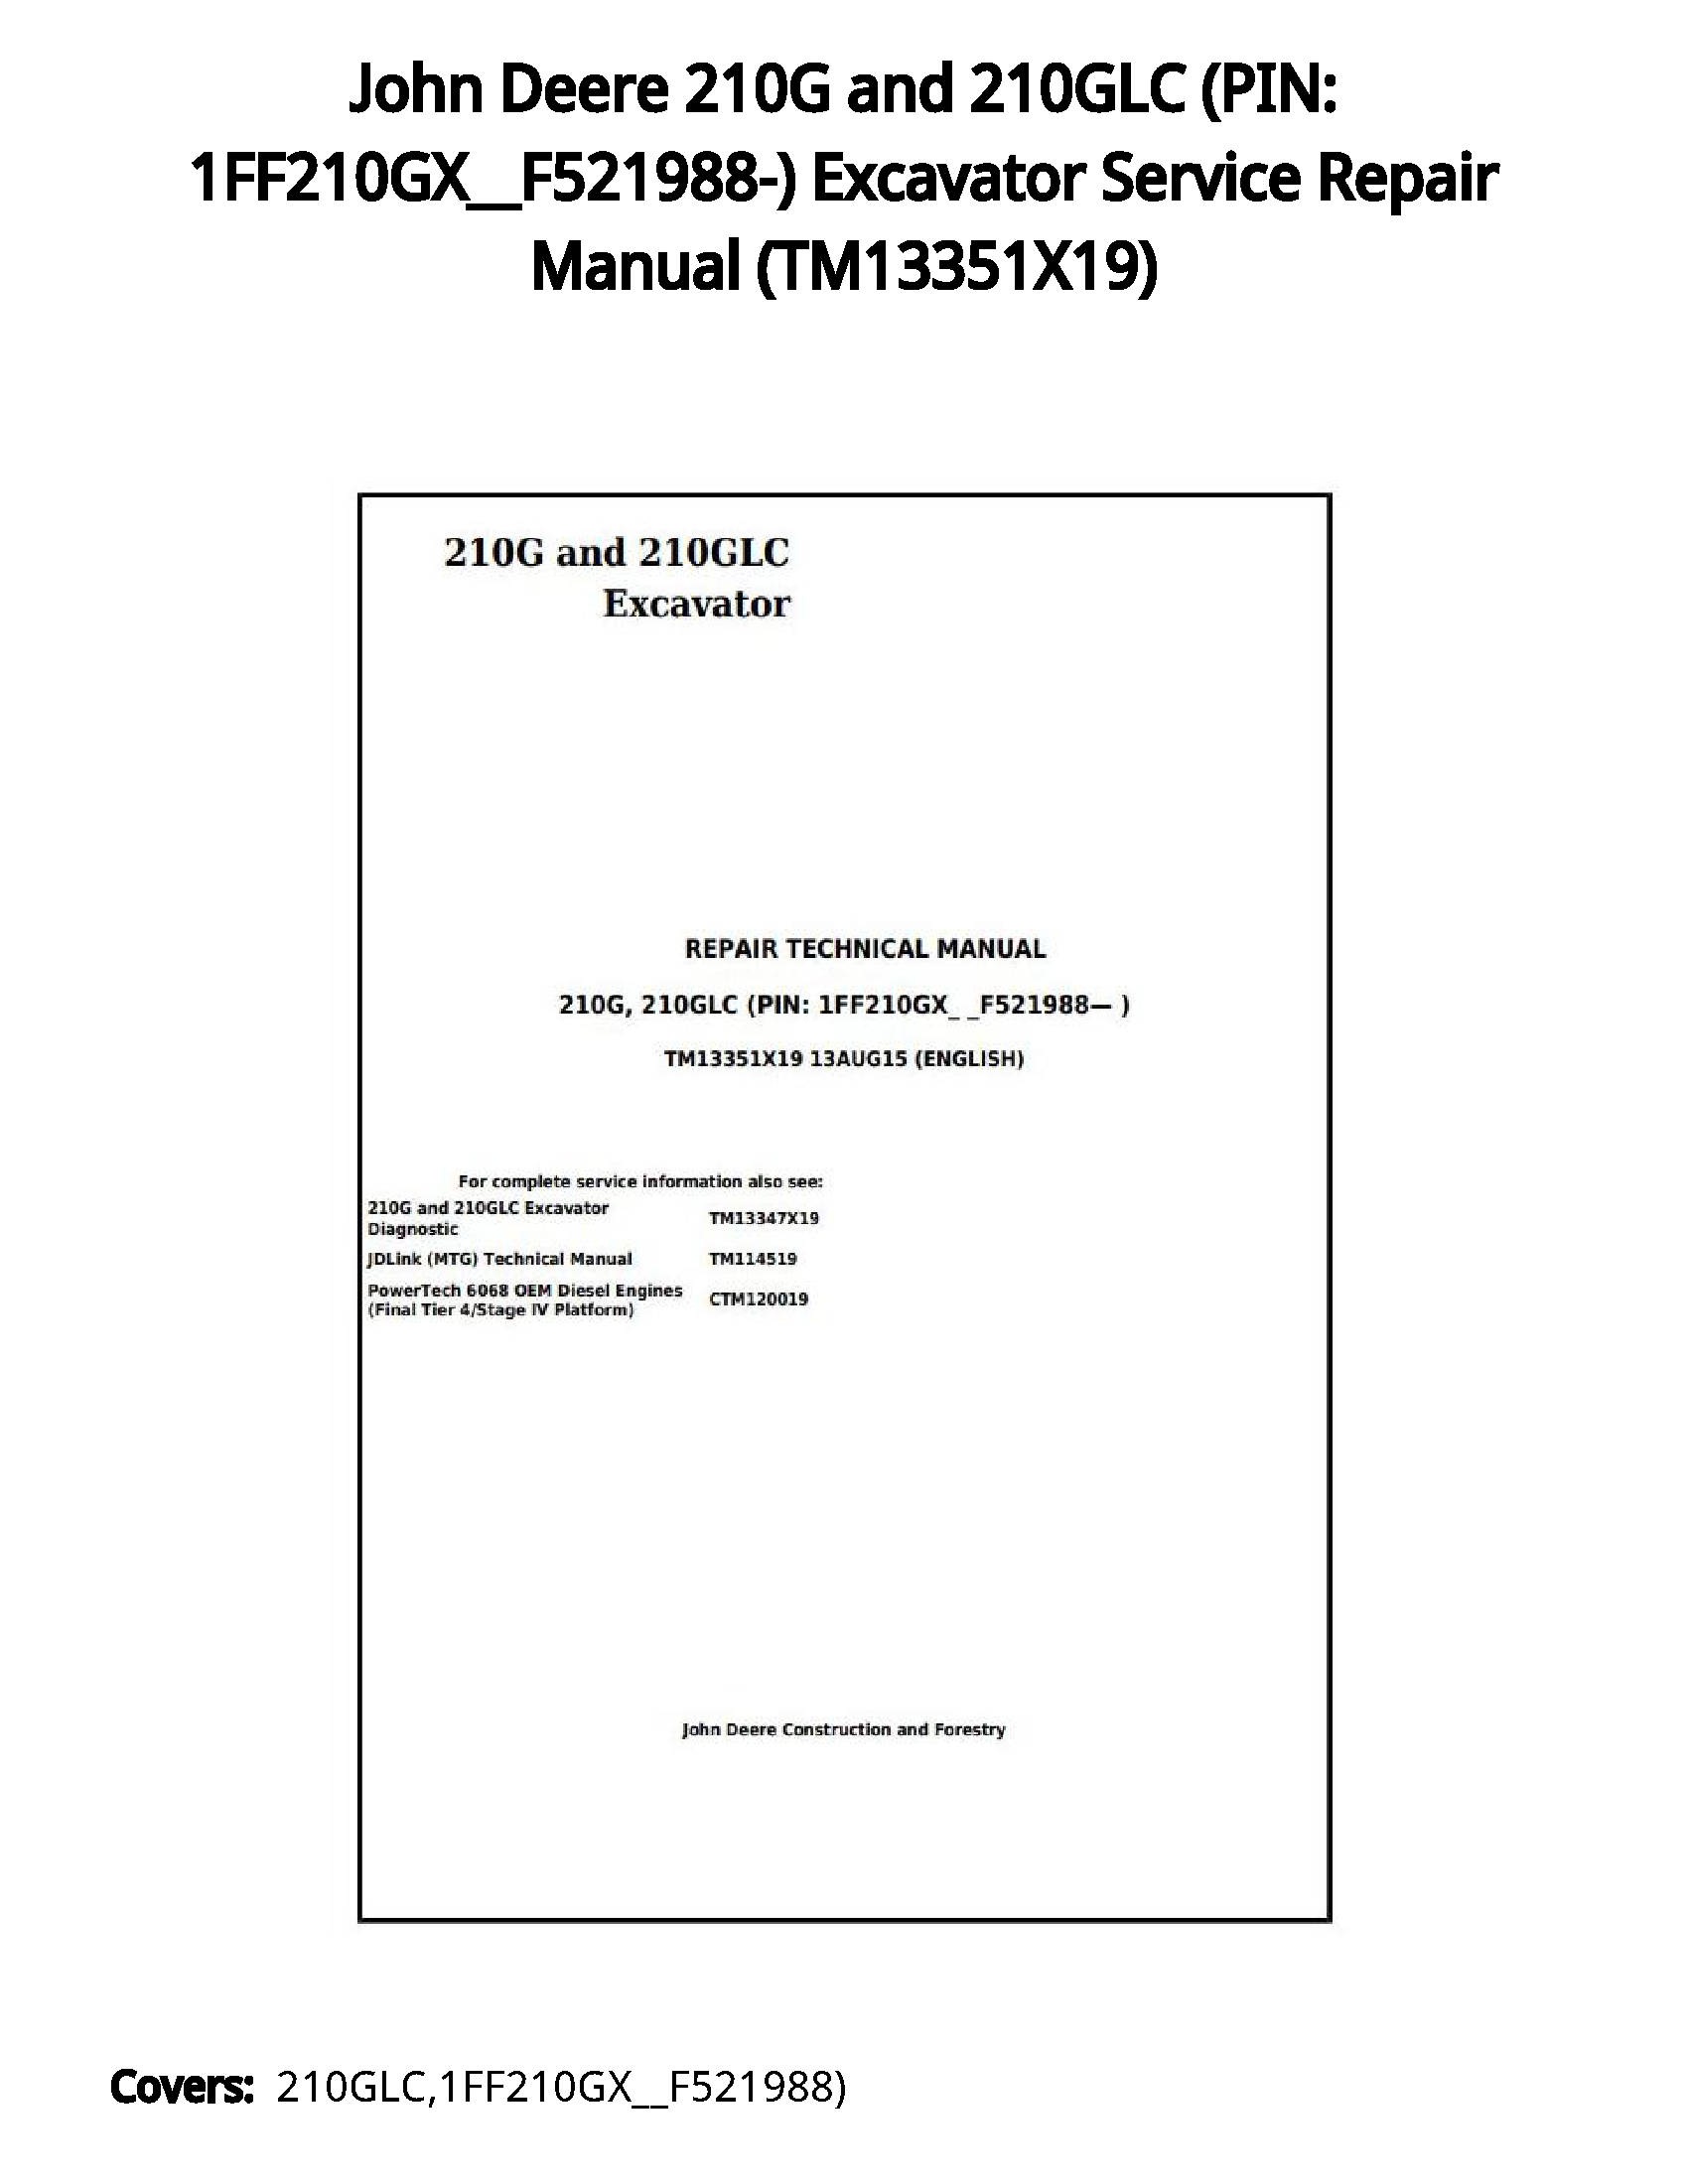 John Deere 210G and 210GLC (PIN: 1FF210GX__F521988-) Excavator Service Repair Manual - TM13351X19